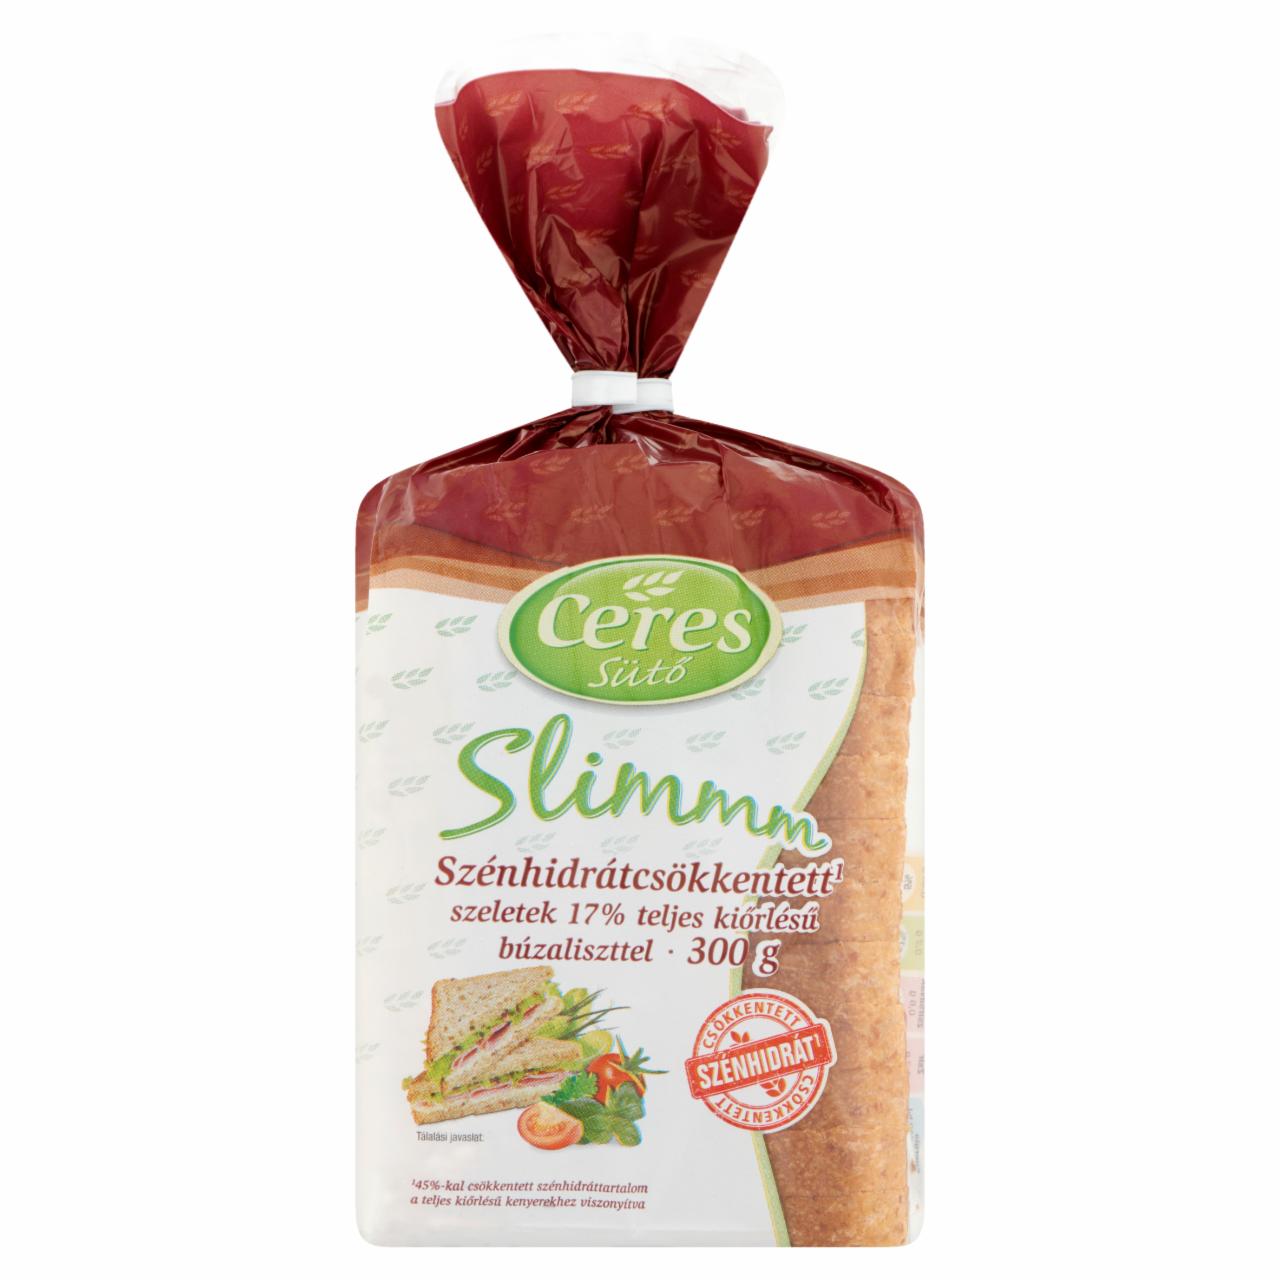 Képek - Ceres Slimmm szénhidrátcsökkentett toast teljes kiőrlésű búzaliszttel 300 g